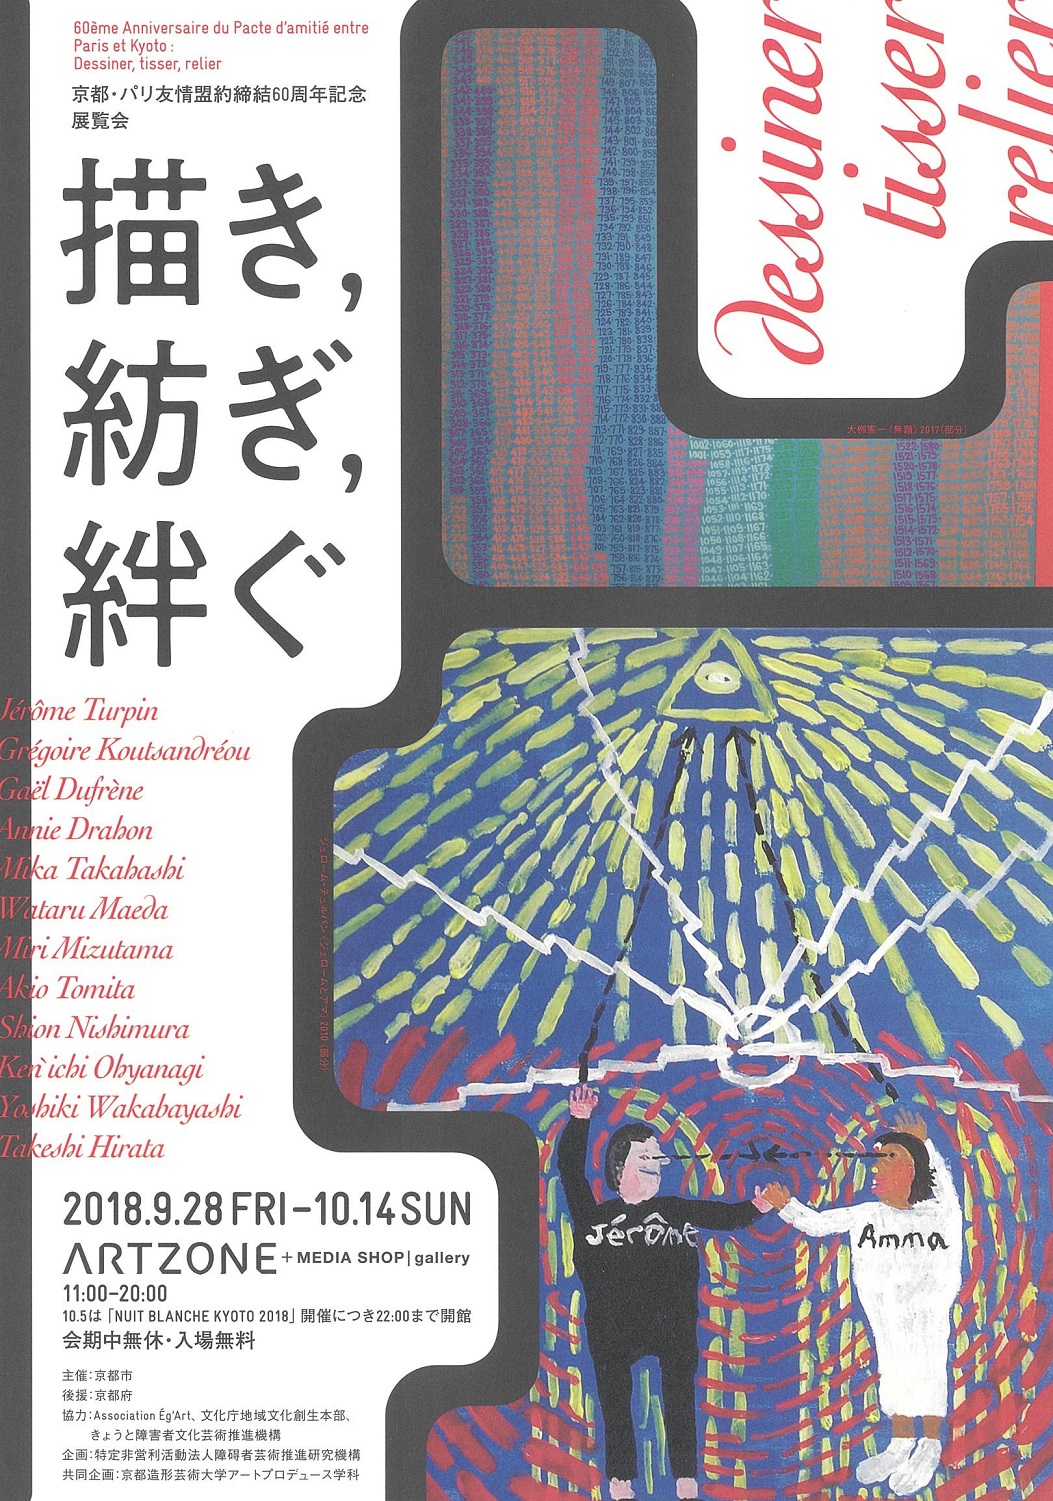 					京都・パリ友情盟約締結60周年記念展覧会
「描き，紡ぎ，絆ぐ」	